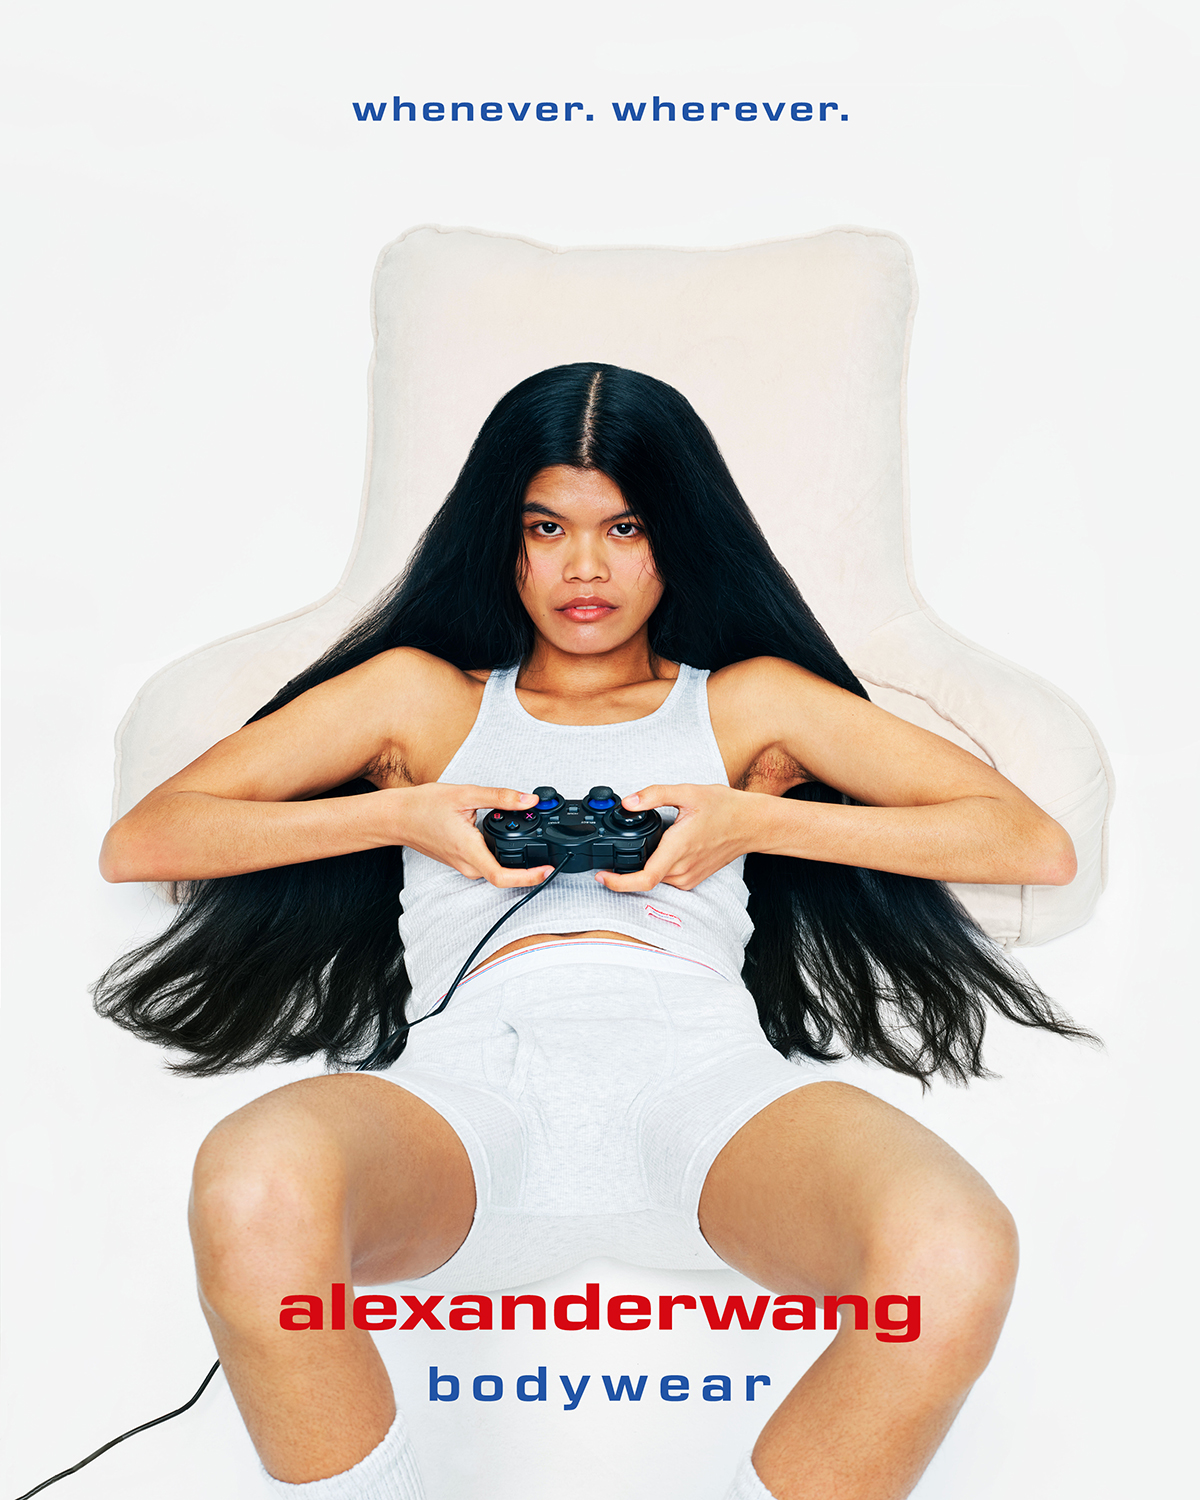 alexander wang bodywear - daterightstuff.com